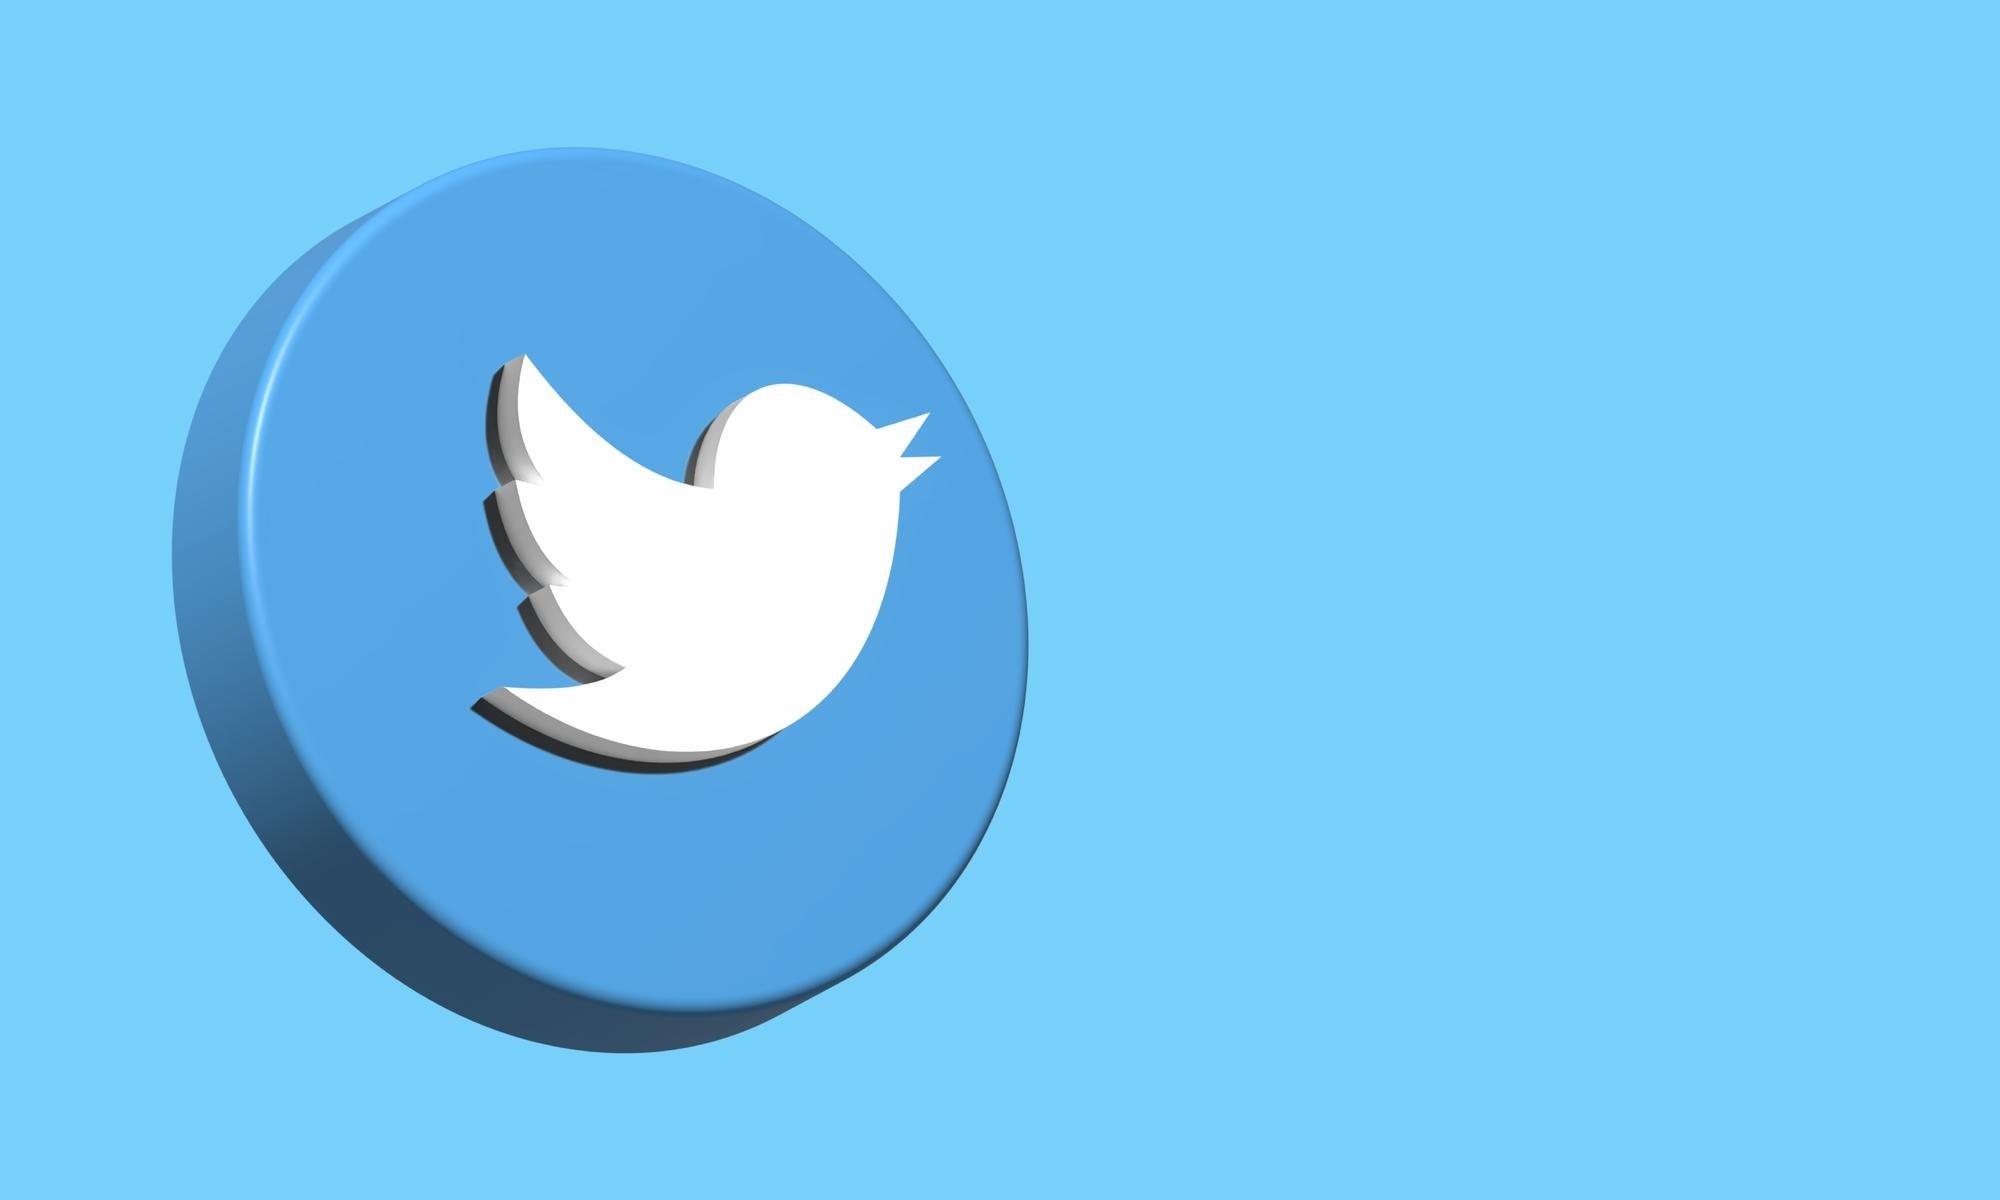 logo do Twitter em 3D